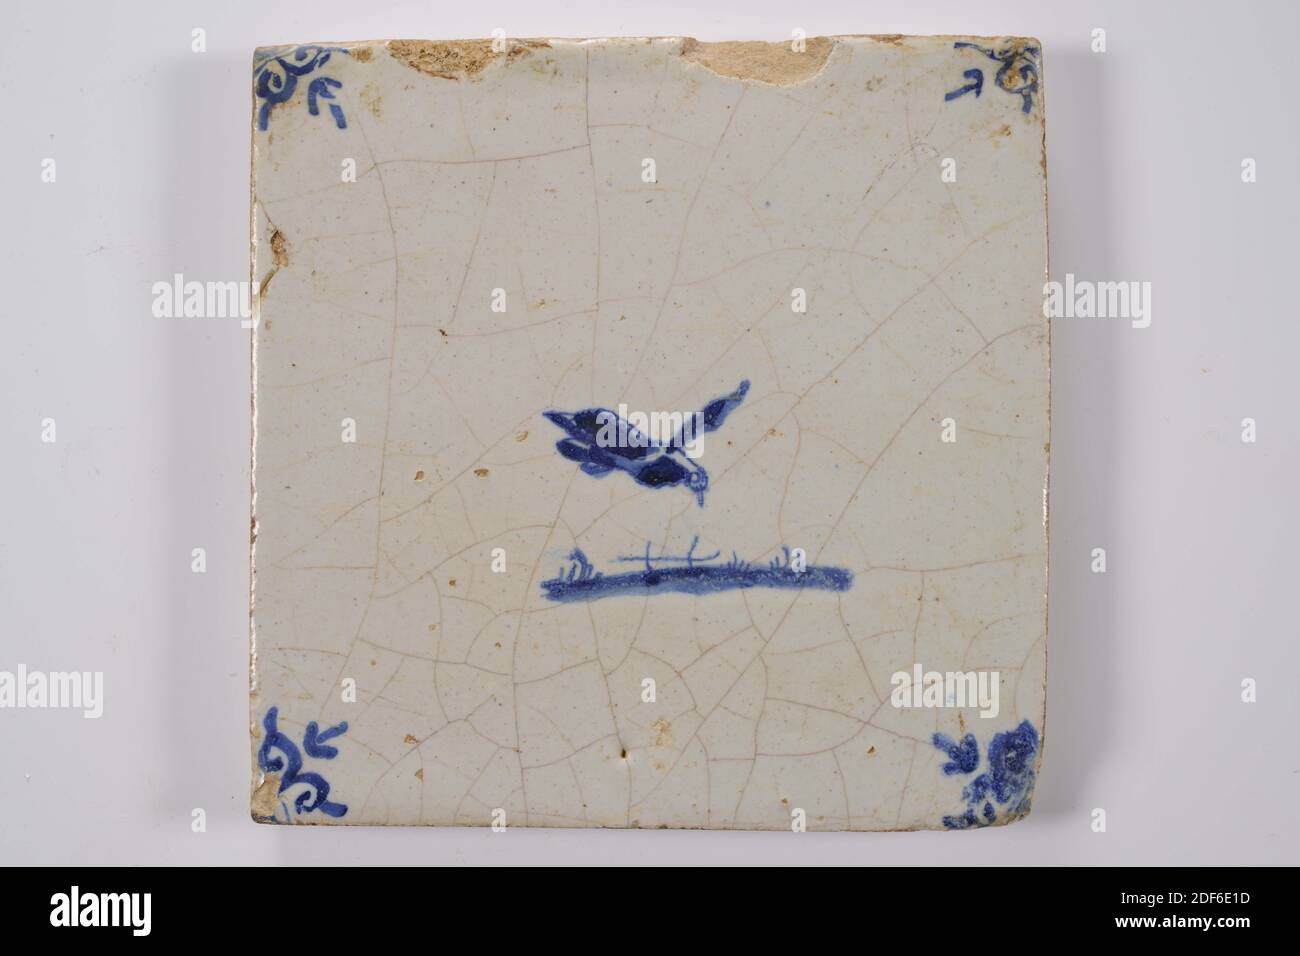 Carreau de mur, Anonyme, entre 1640-1700, glaçure d'étain, faïence, général: 13.2 x 13.4 x 1,2cm (132 x 134 x 12mm), oiseau, carreau de mur de faïence recouvert de glaçure d'étain et peint en bleu. La tuile représente un oiseau volant orienté juste au-dessus d'un sol. La tuile a une tête de boeuf comme un motif de coin, 1995 Banque D'Images